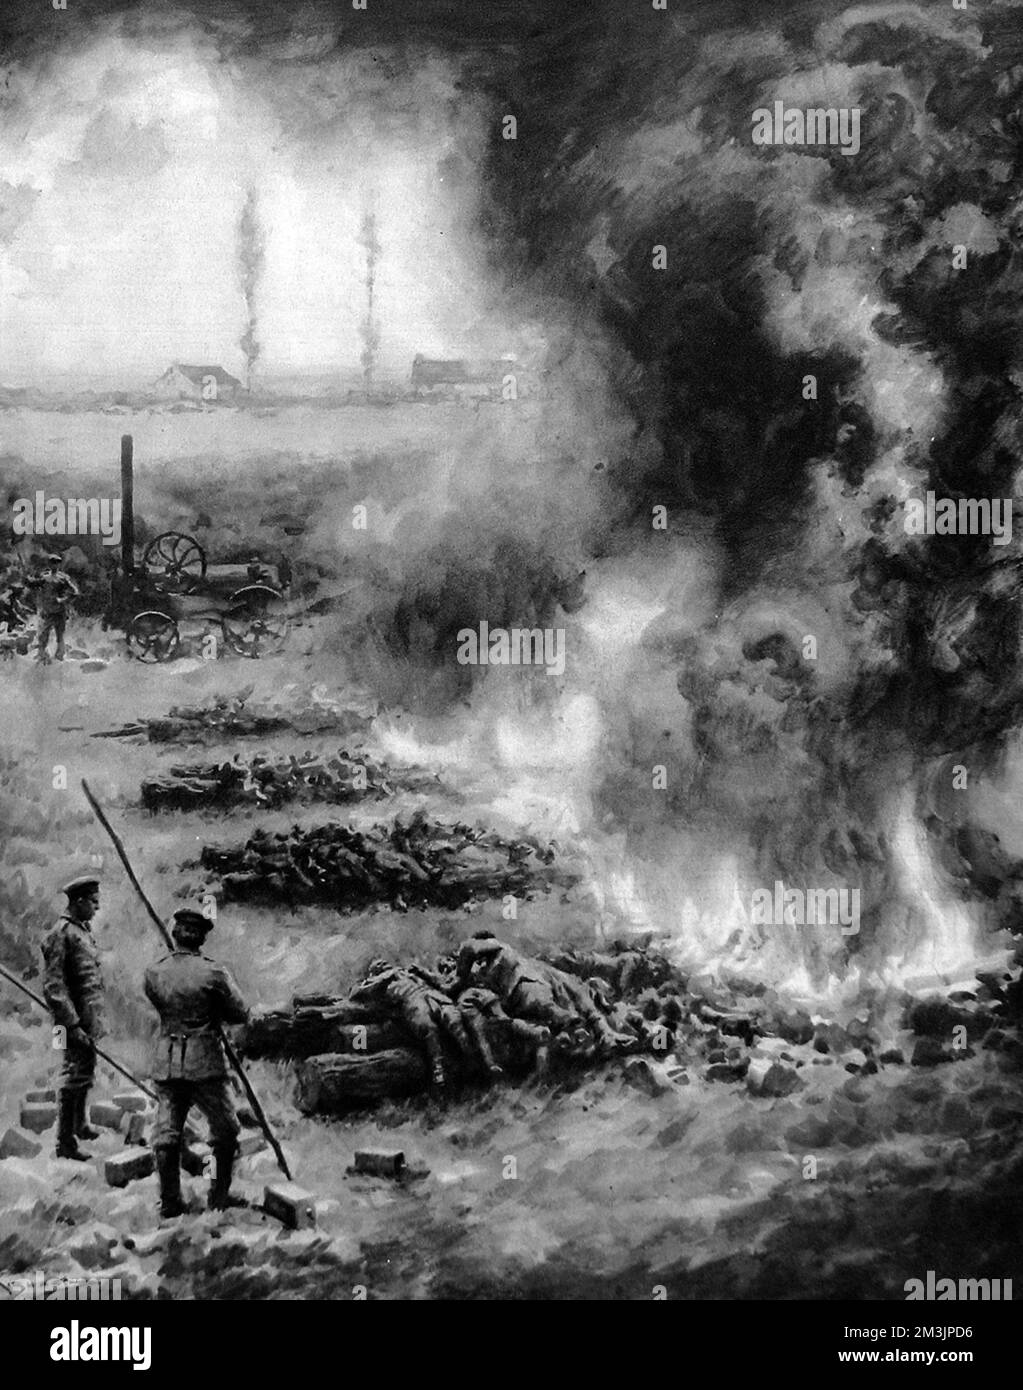 Les troupes allemandes ont fait leurs morts à Esternay, après la bataille de la Marne en septembre 1914. On estime que les Allemands ont subi des pertes de 250 000 pendant la bataille, et que les Français ont subi des pertes similaires. Banque D'Images